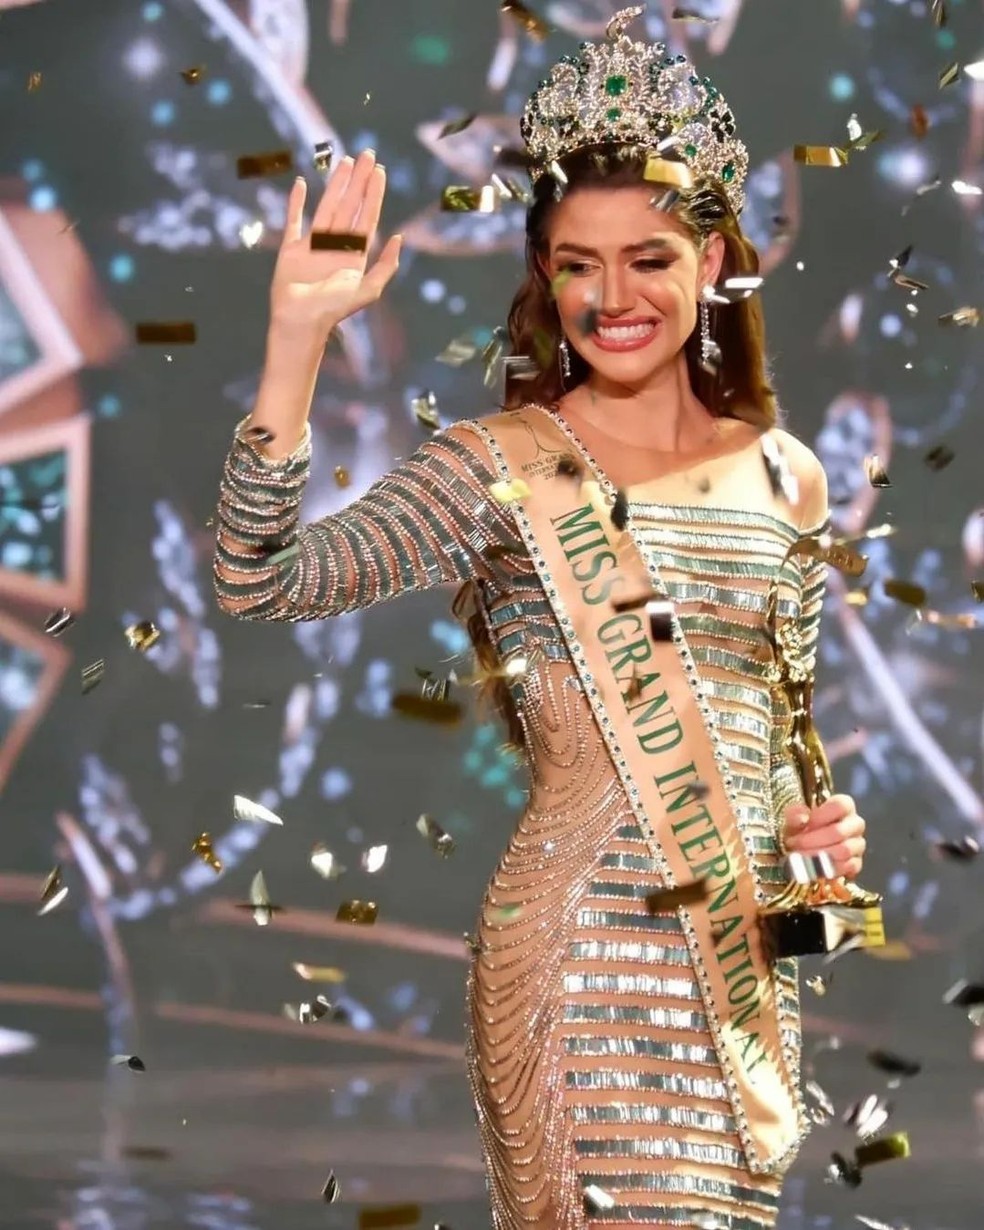 Menina de 10 anos de São Bernardo vai receber o título de Miss